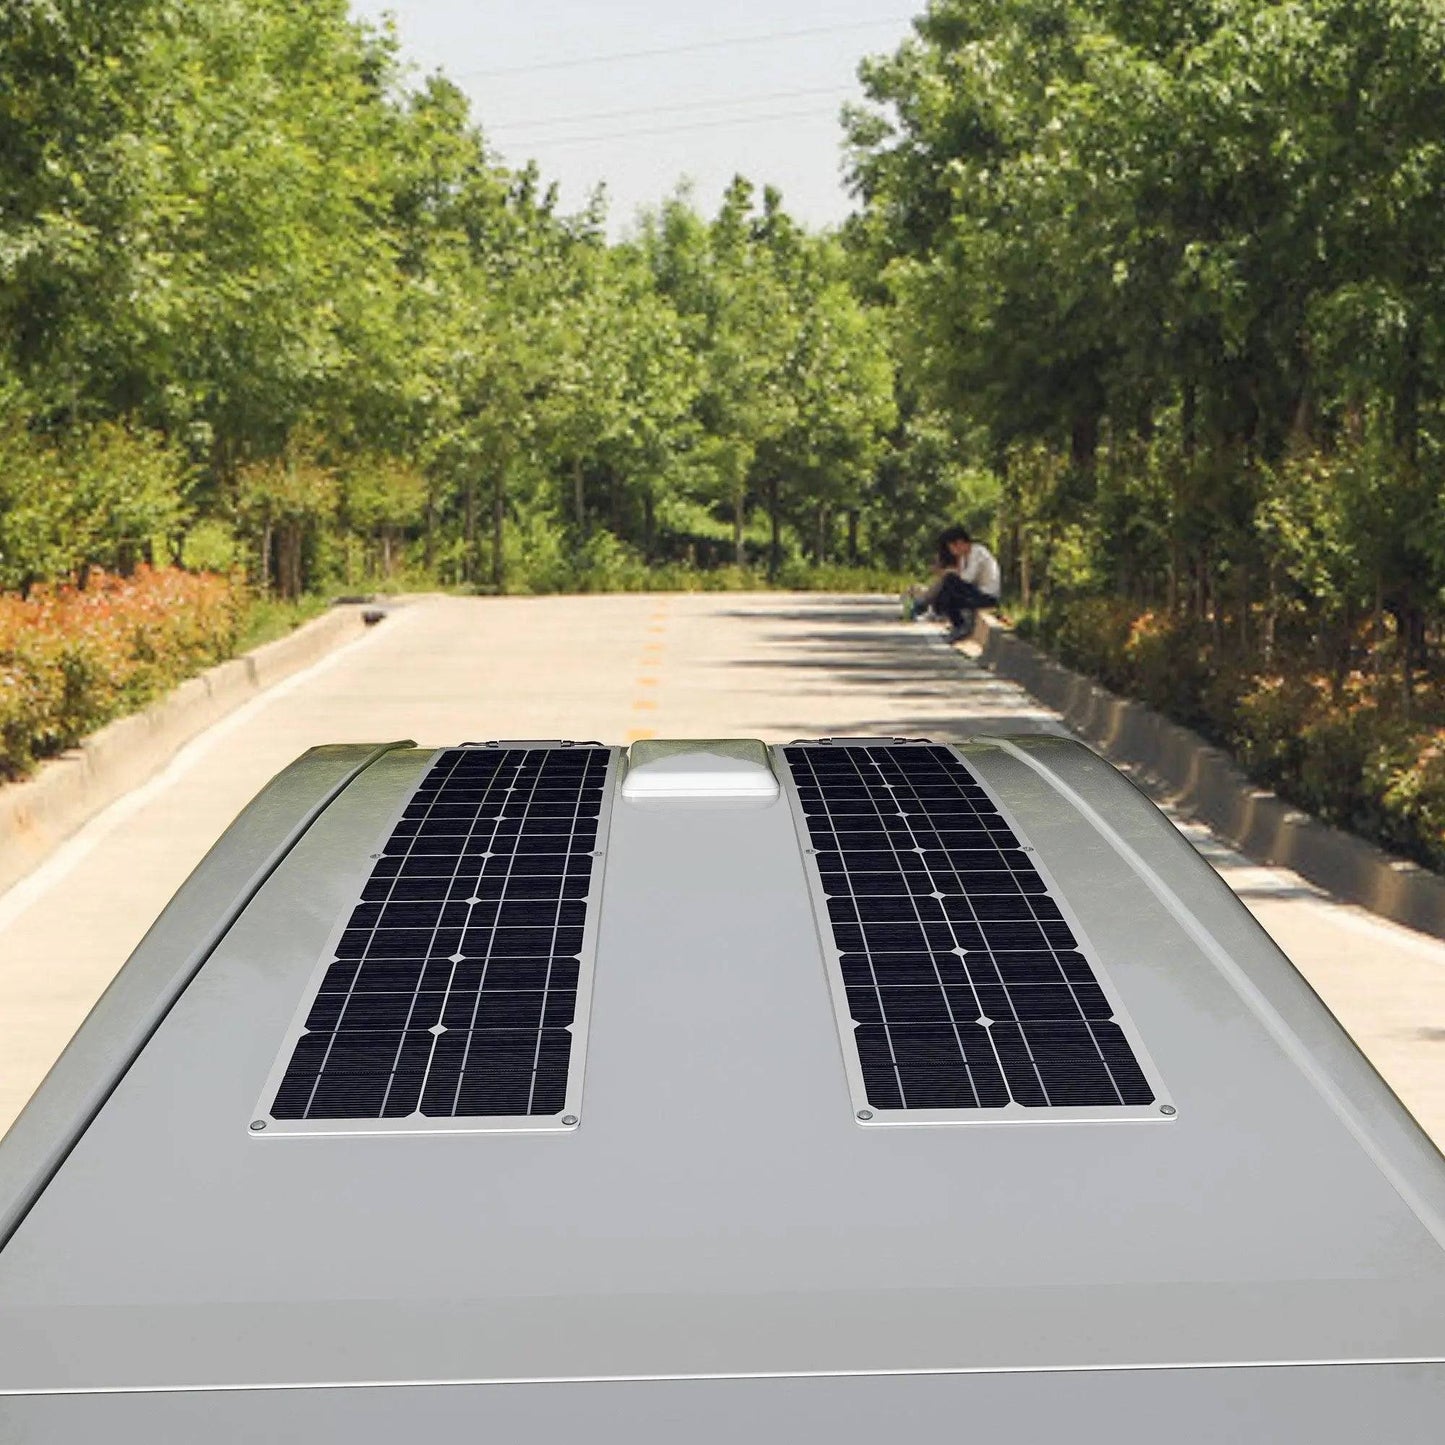 Solar Power Panel Kit 100 watt 50w 16v 12v Strip Shape Monocrystalline Cell Flexible Thin Film Lightweight Waterproof kit - 54 Energy - Renewable Energy Store